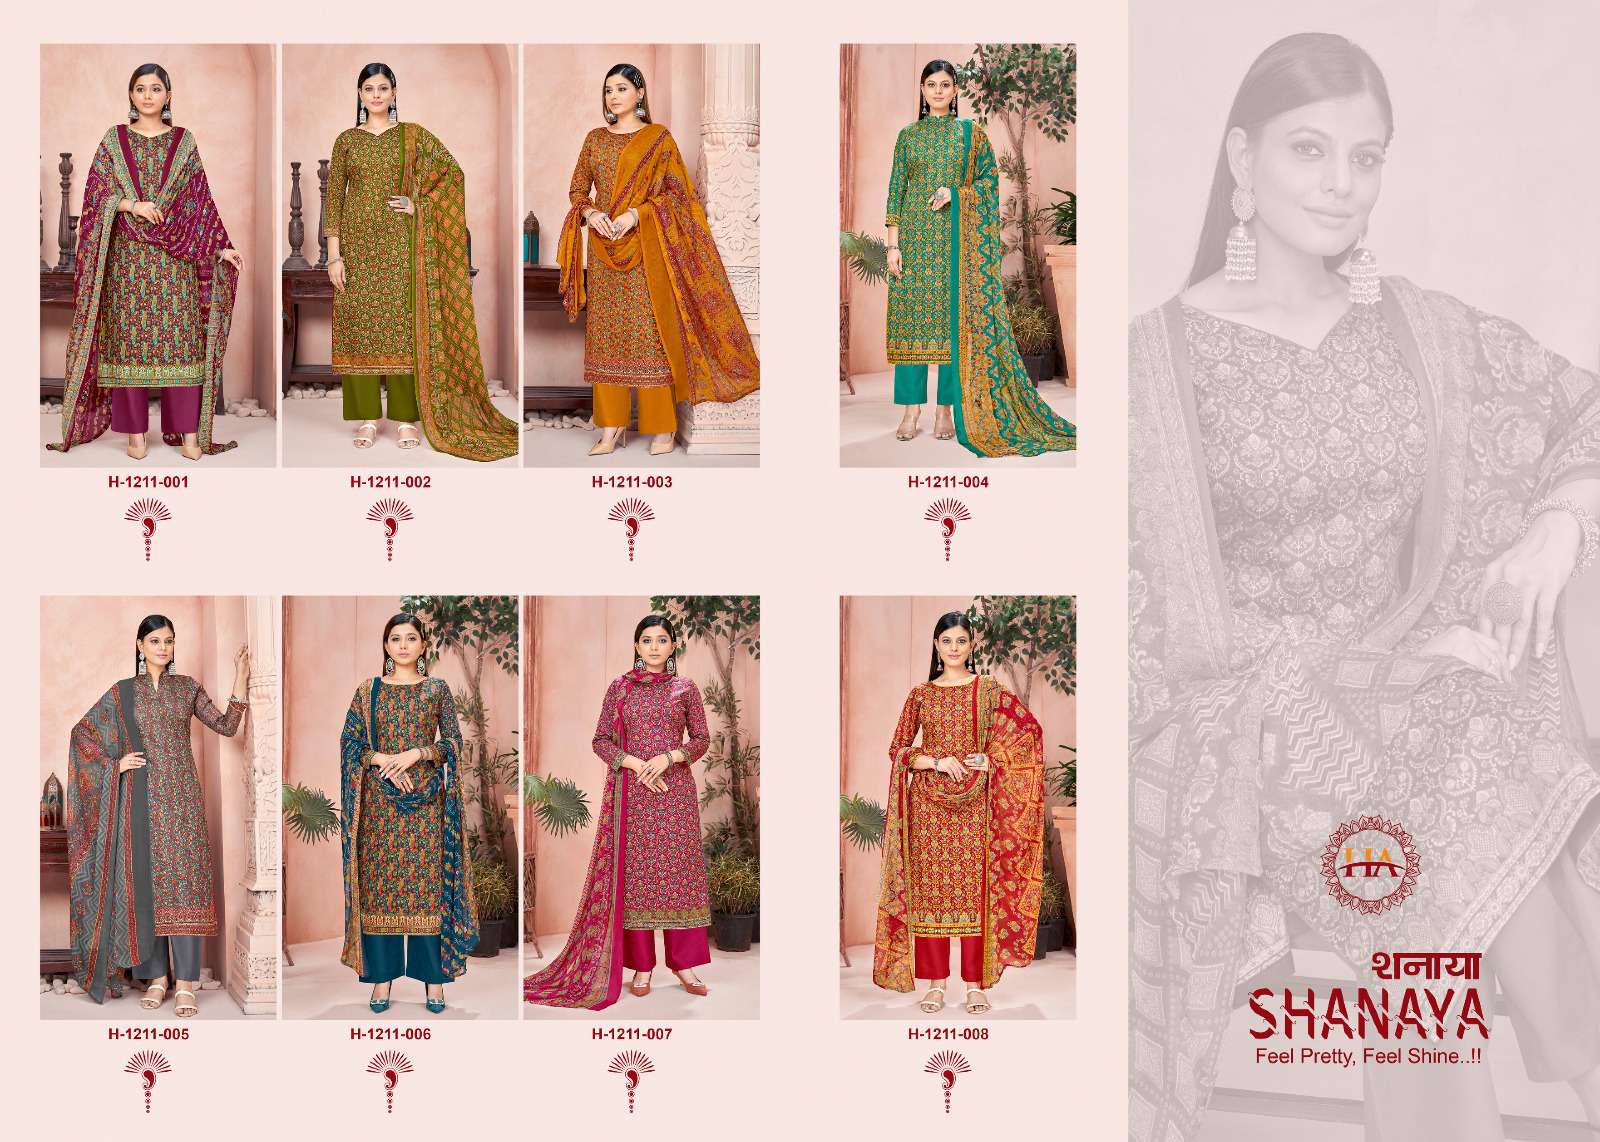 harshit fashion shanaya 1211-001-008 series latest designer salwar kameez wholesaler surat gujarat